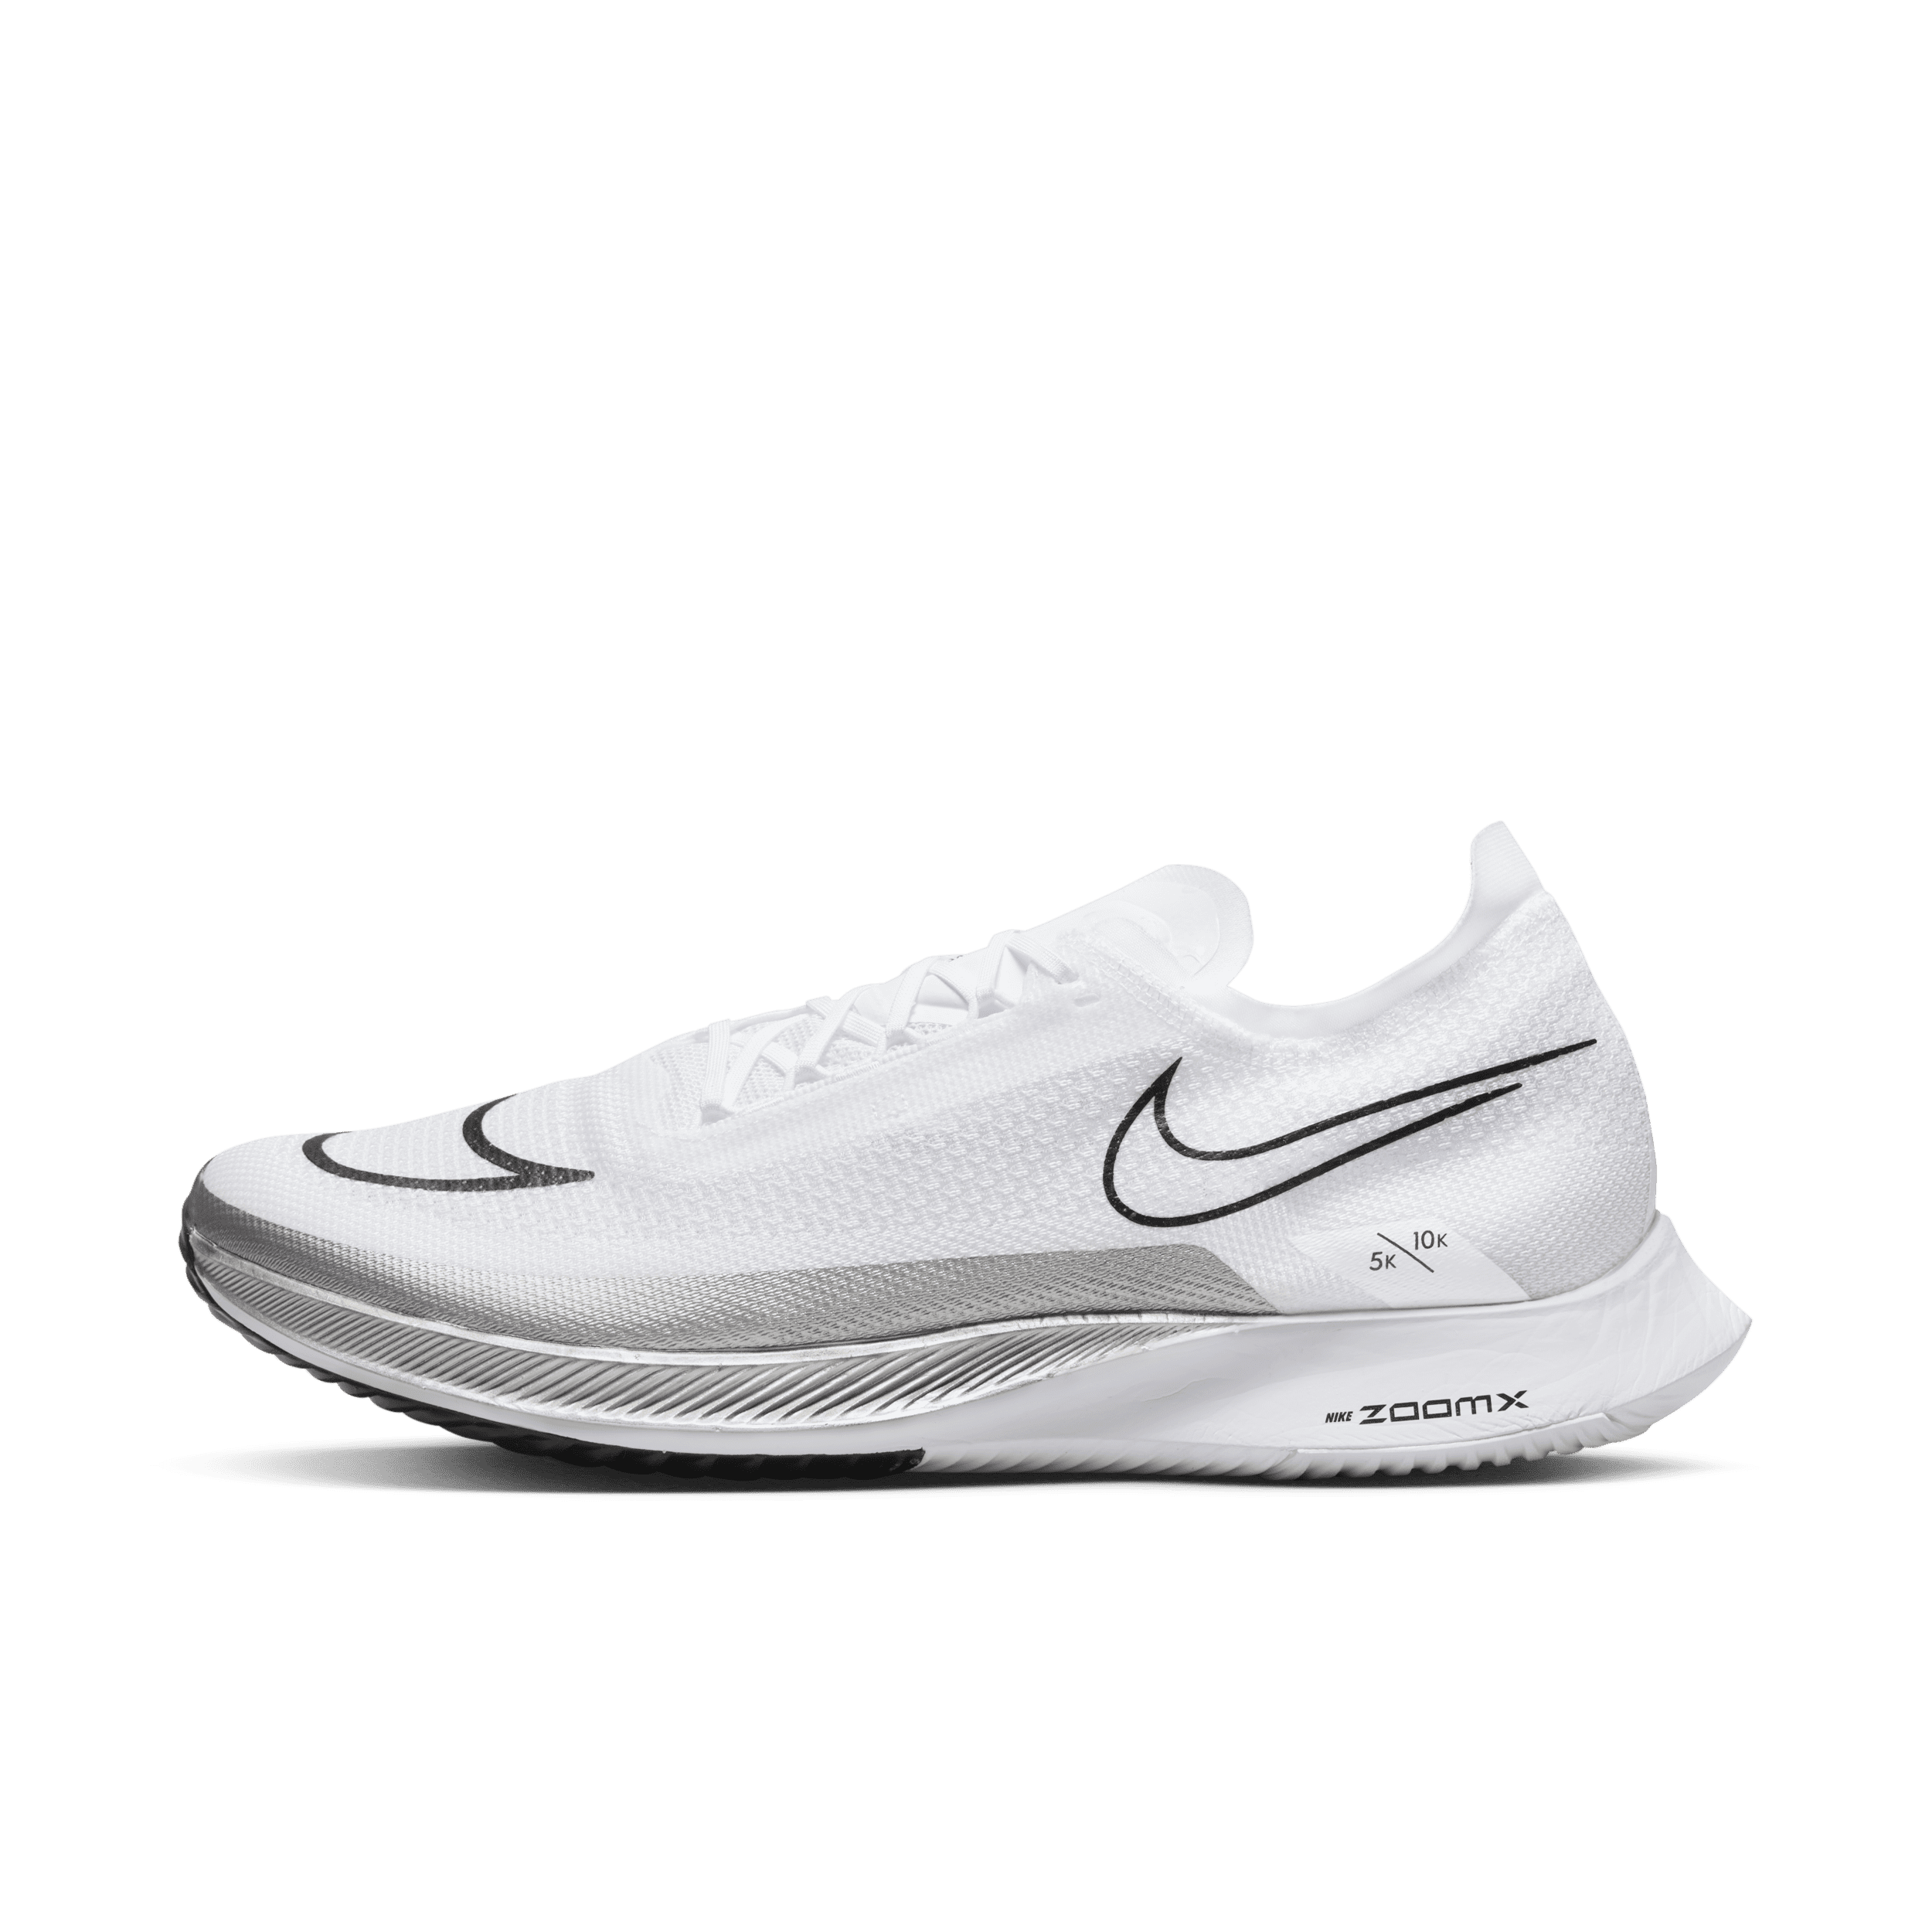 Nike Streakfly Zapatillas de competición para asfalto - Blanco